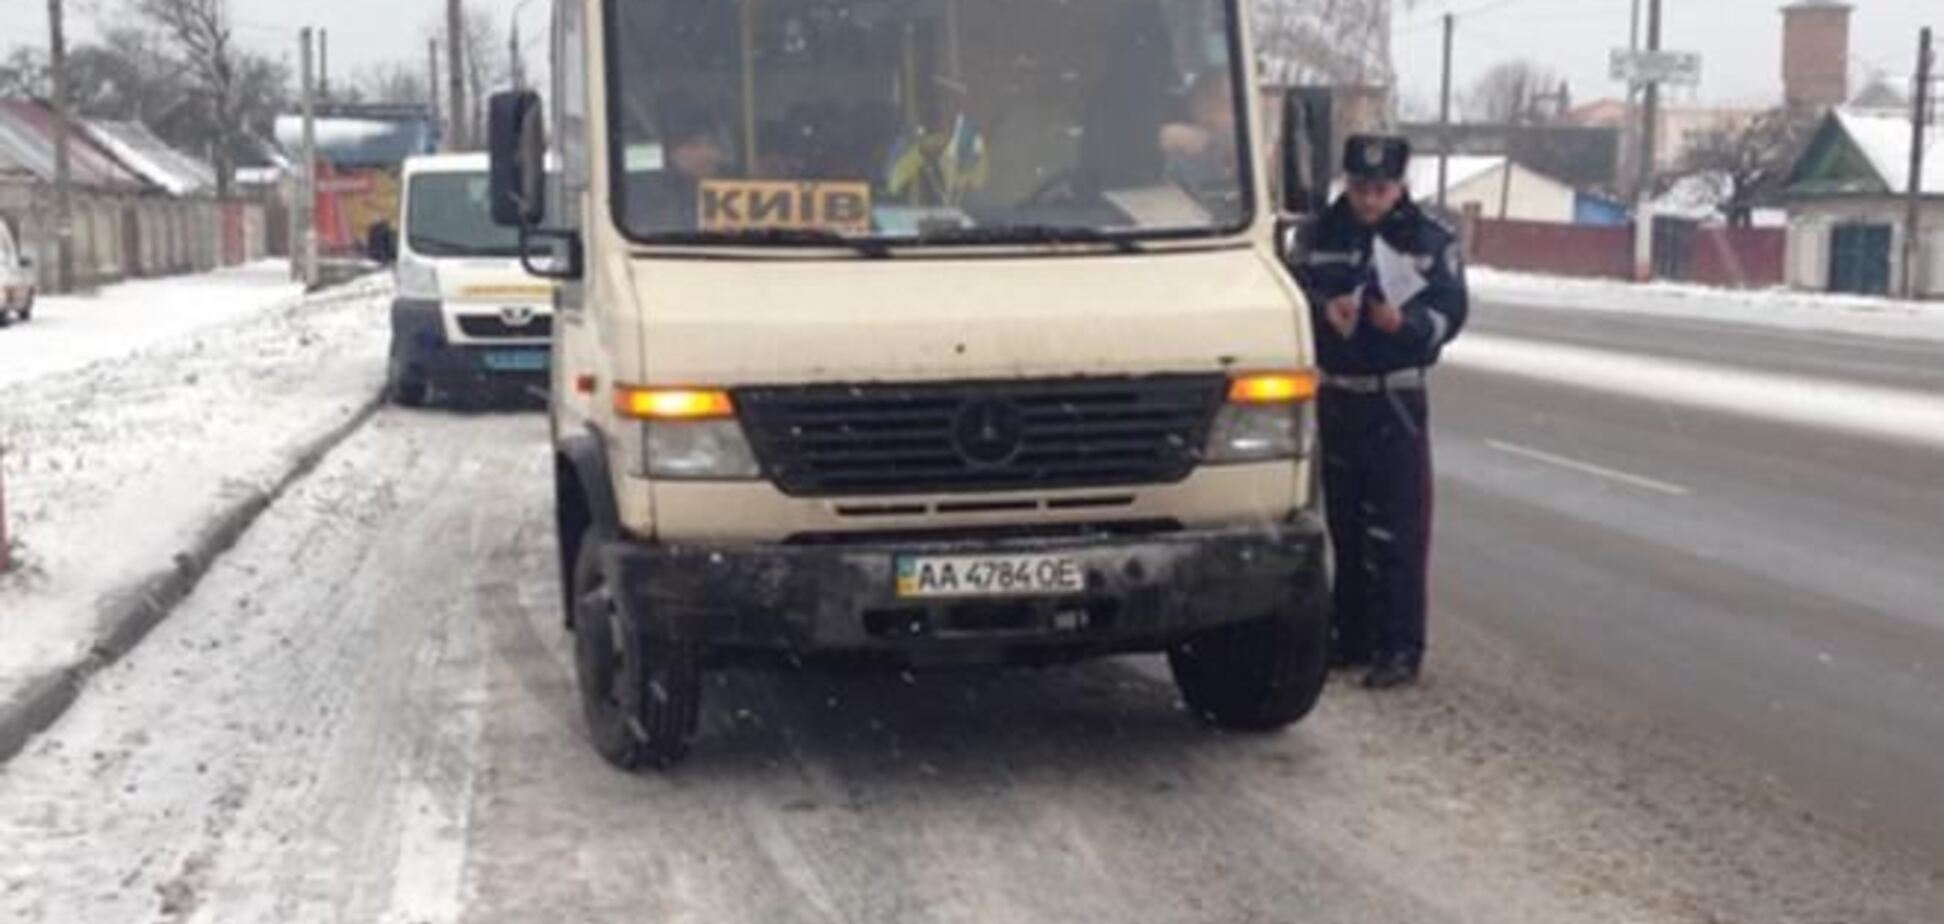 ГАИ усиленно проверяет маршрутки и автобусы, следующие в сторону Киева